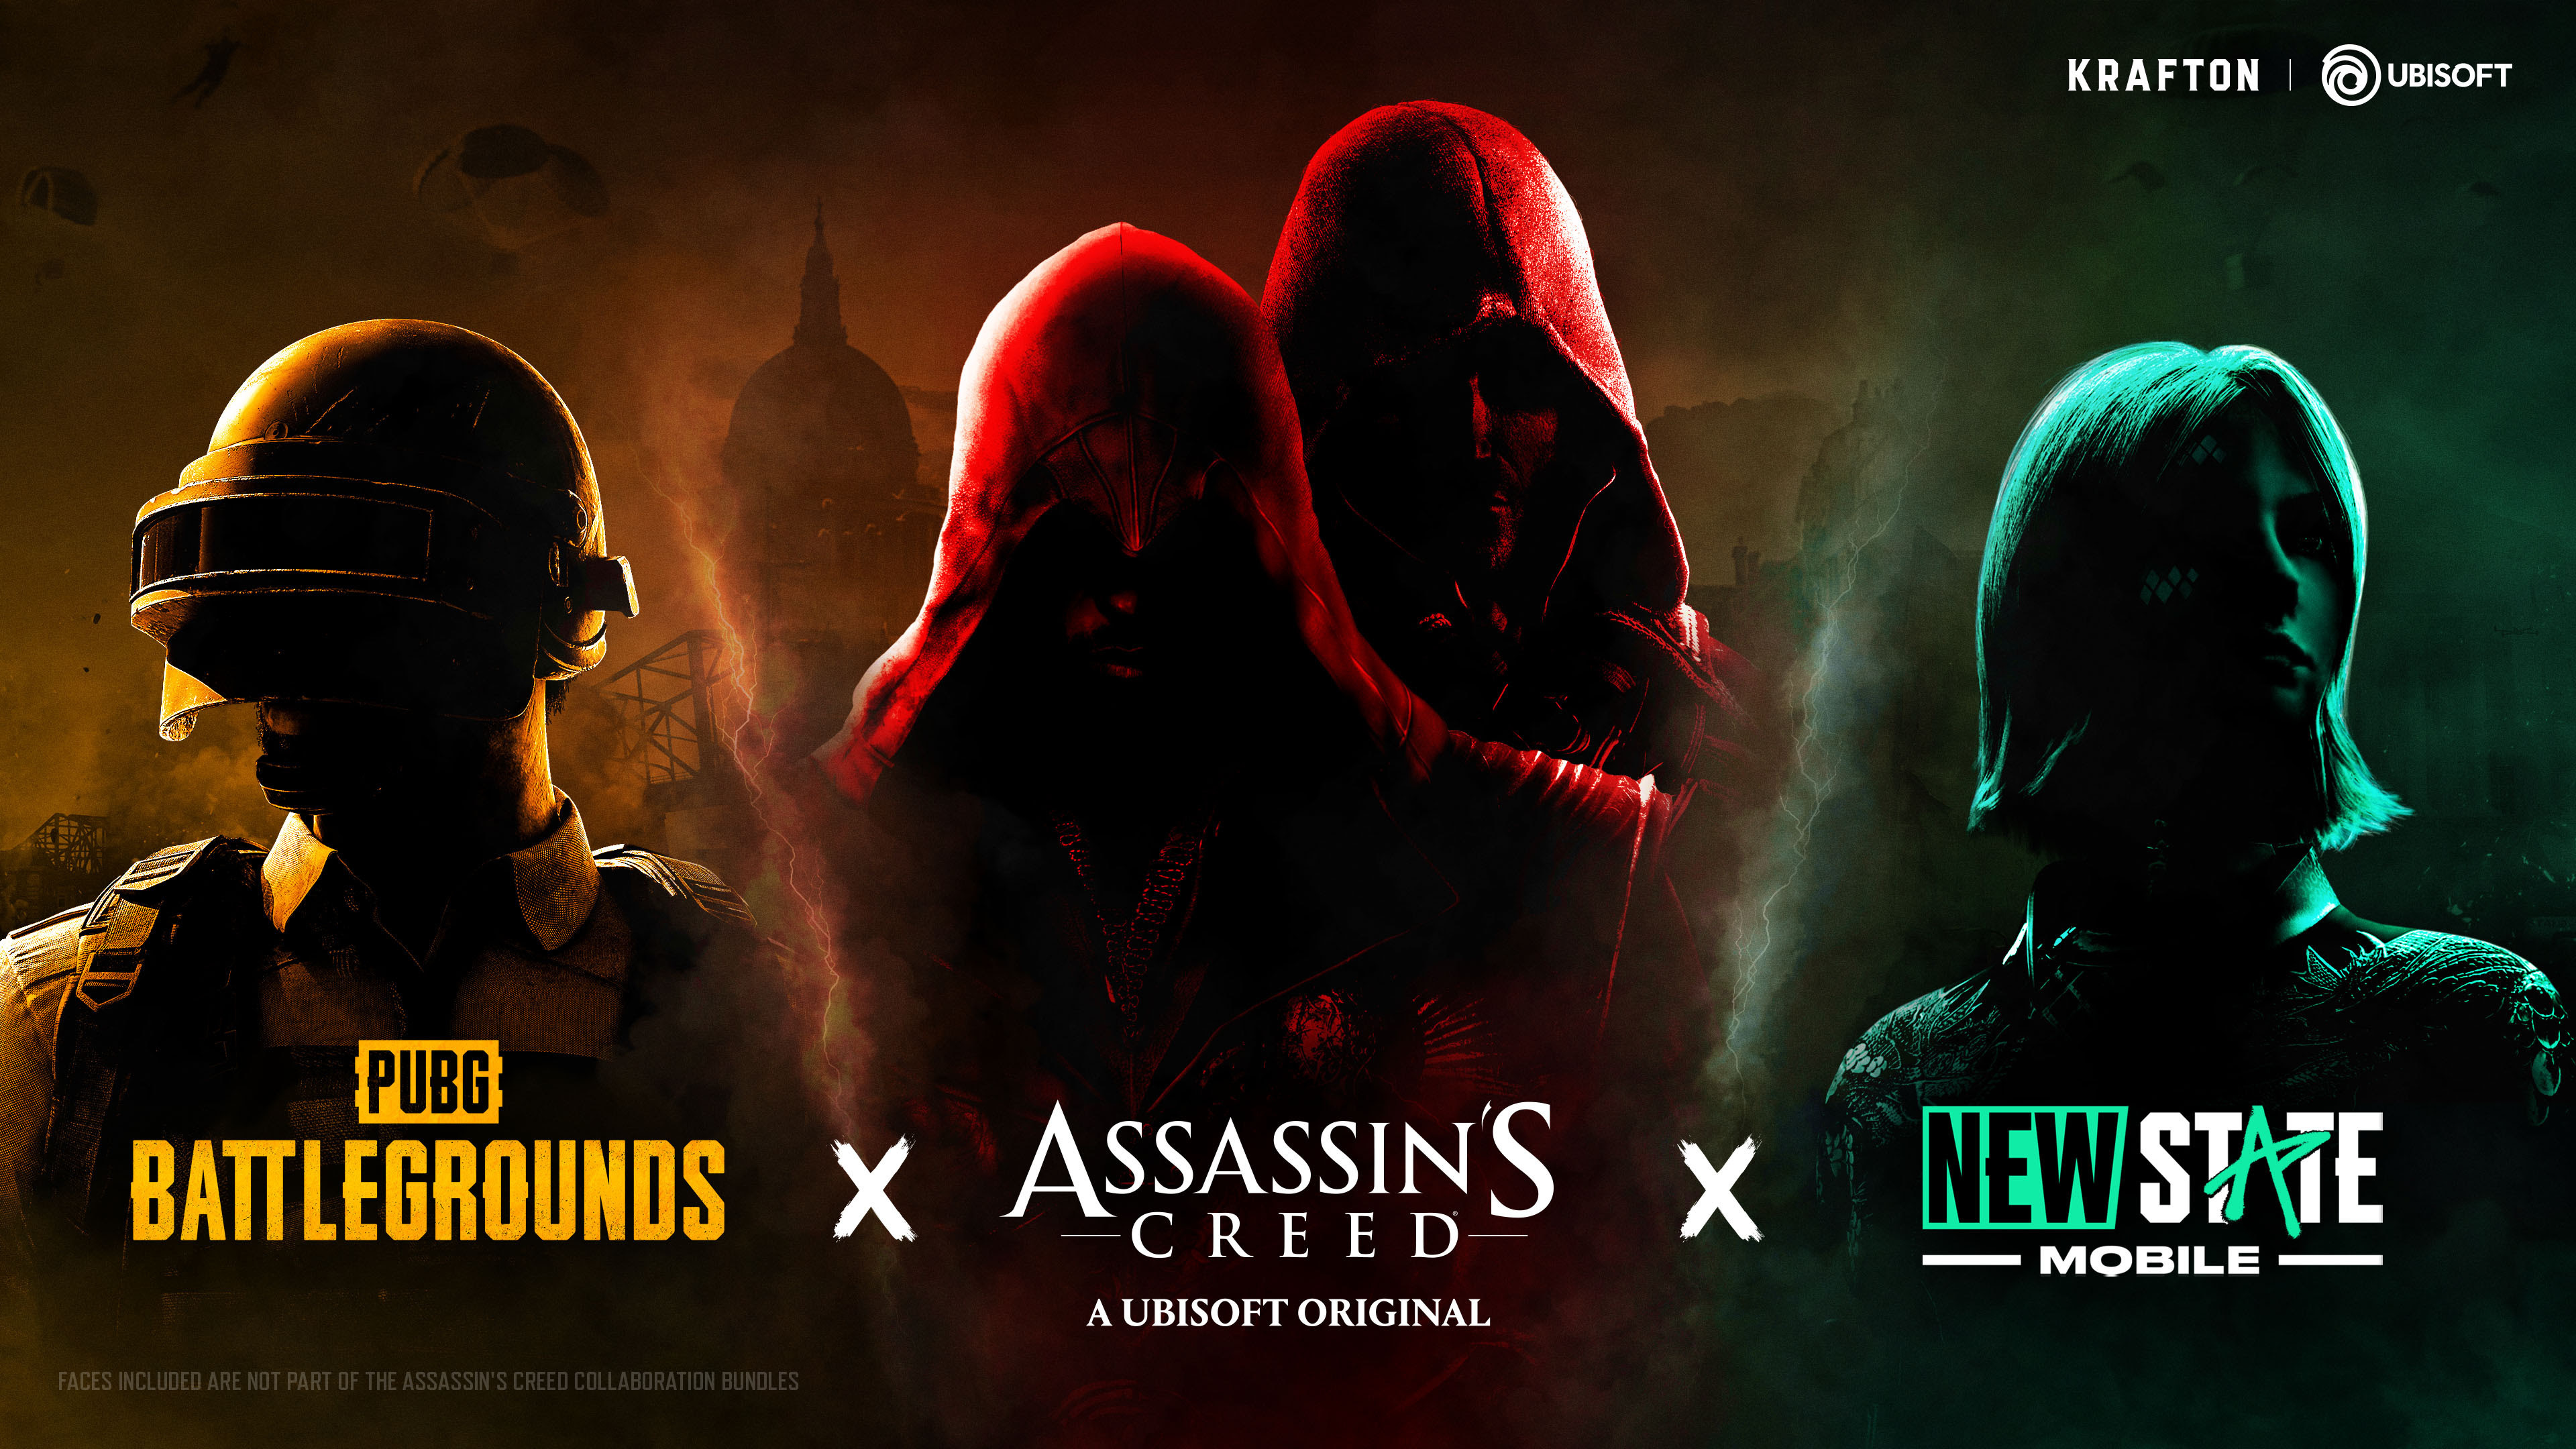 Assassin's Creed X PUBG y NEW STATE anuncian colaboración